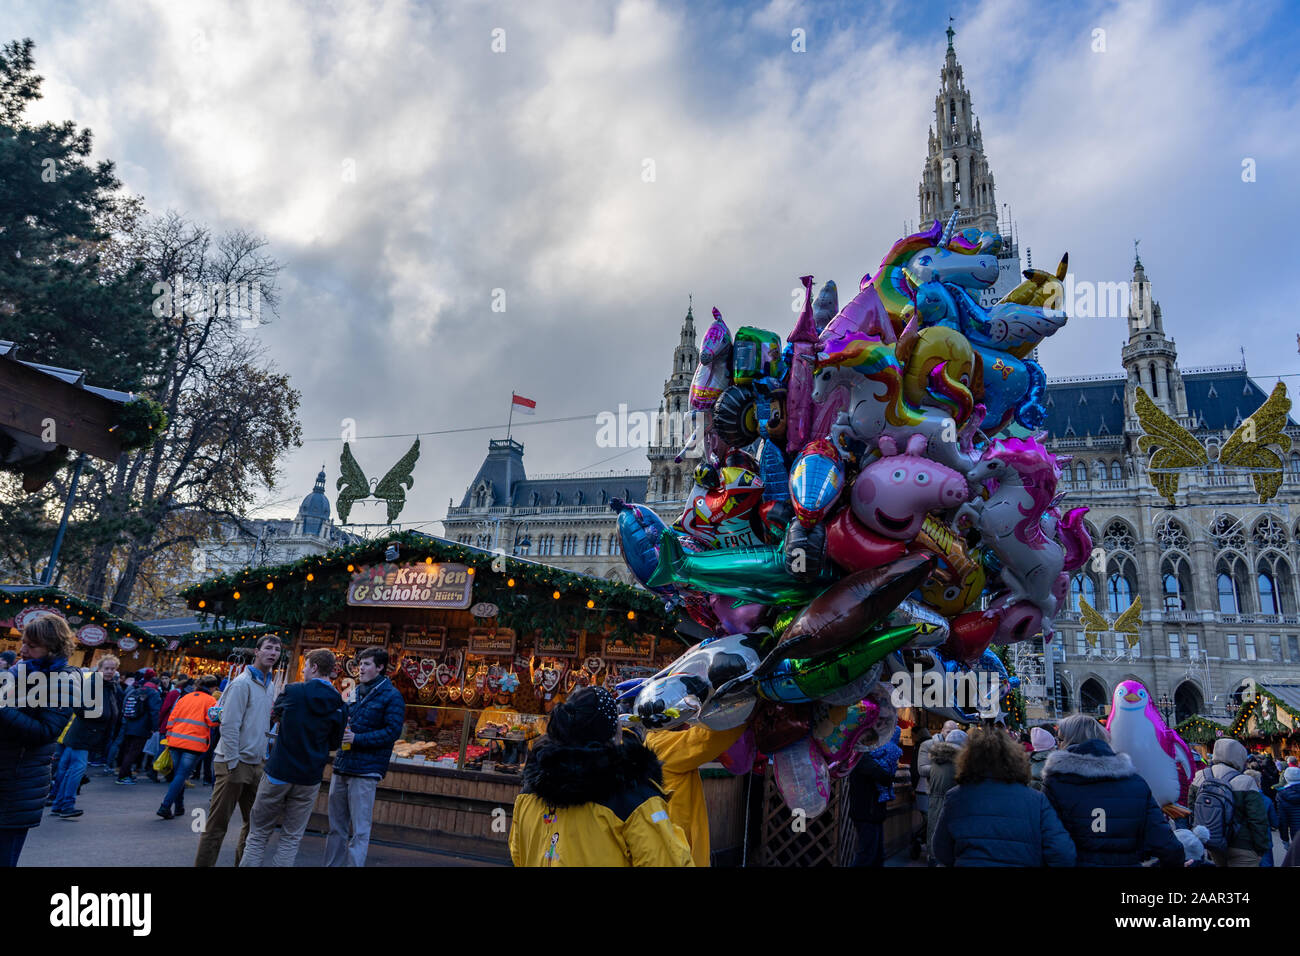 Vienne, Autriche - 11.23.2019 : christkindelmarkt à Wien Vienne avec l'homme de jour personnes et des ballons pour les enfants Banque D'Images